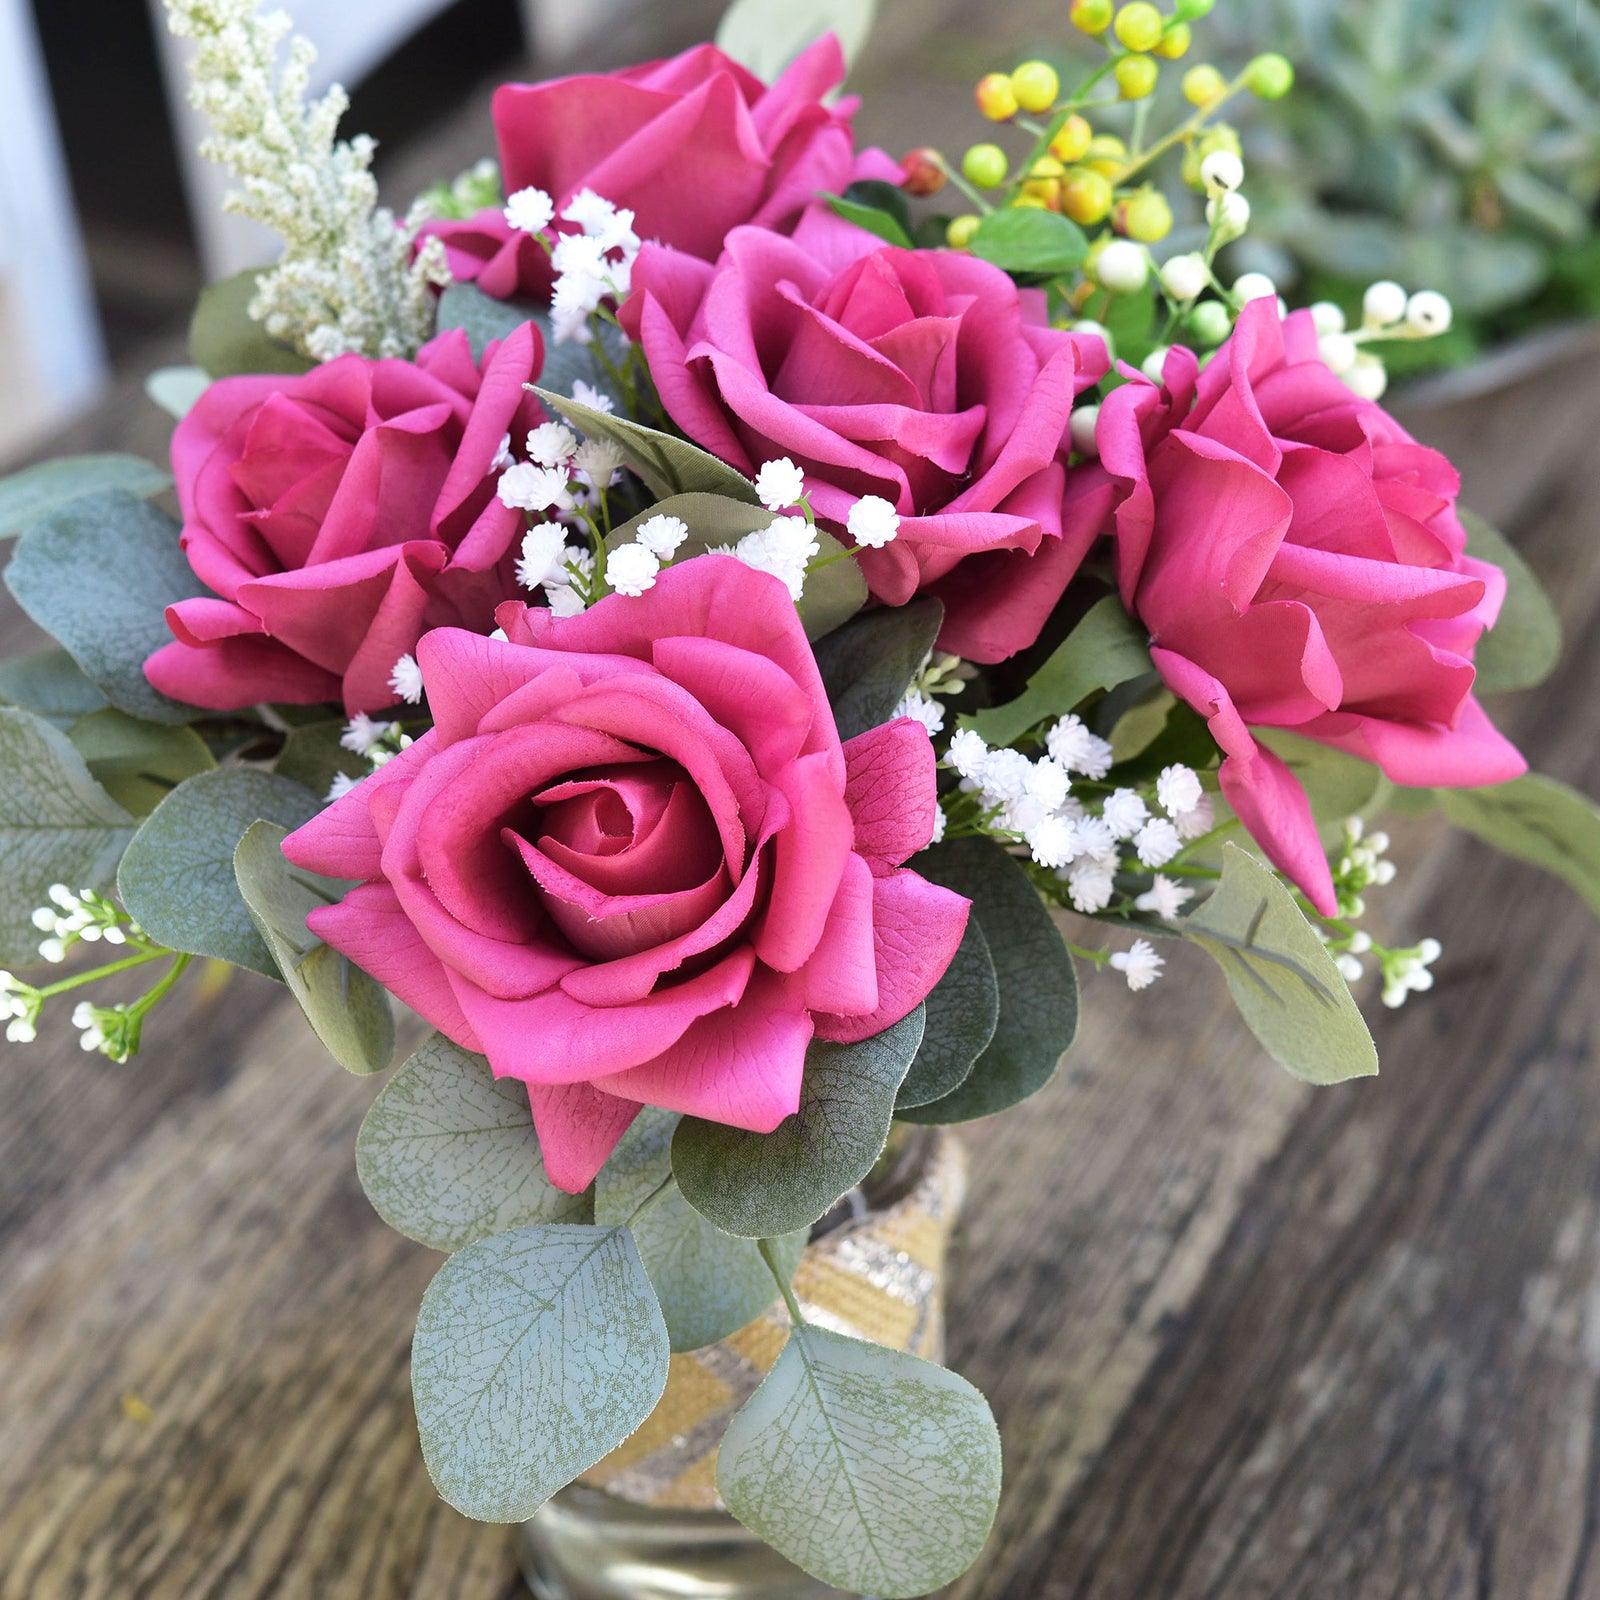 FiveSeasonStuff Raspberry Magenta Real Touch Garden Rose Artificial Flowers Wedding, Bridal, Home Décor 5 Stems 9.8"